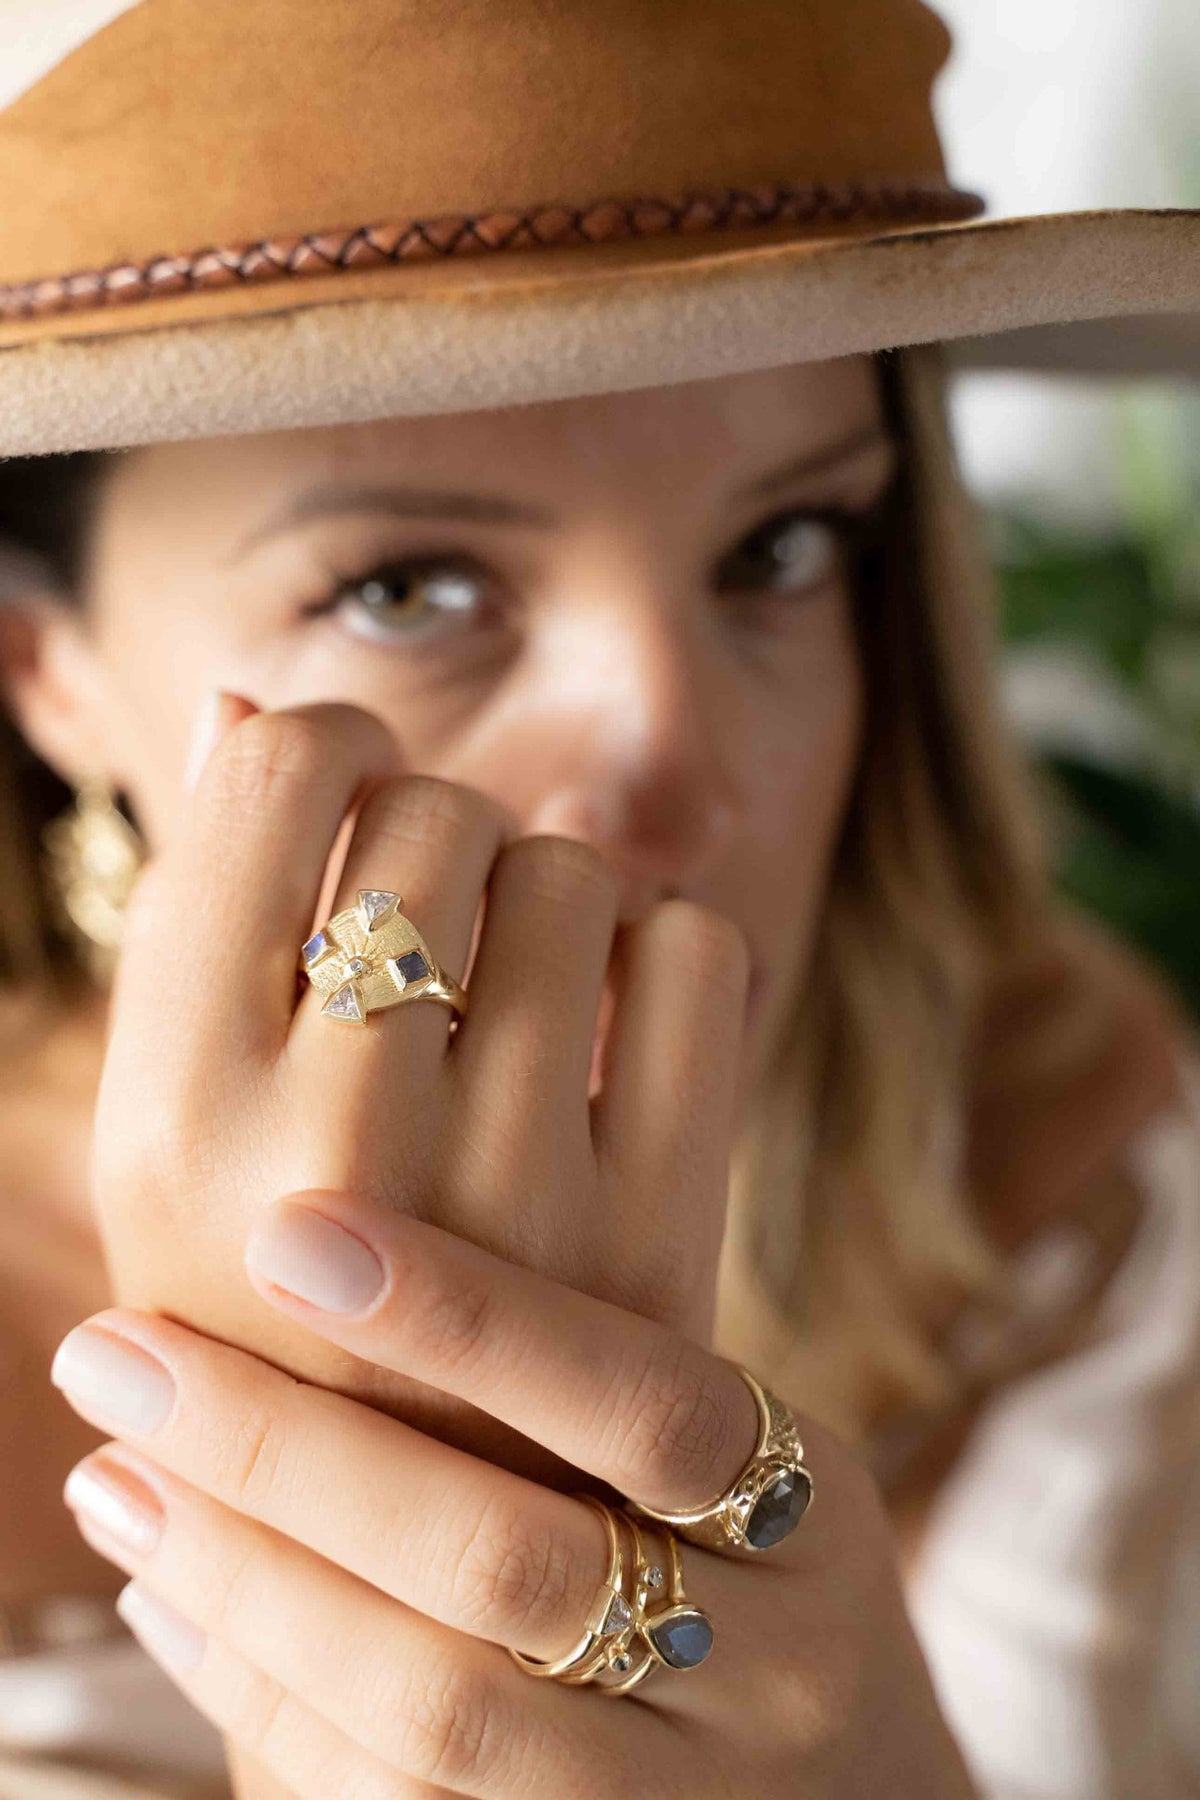 Labradorite & Zirconia Ring * Gold Plated Ring * Statement Ring *Gemstone Ring * Labradorite * Bridal Ring *Wedding Ring  * BJR259